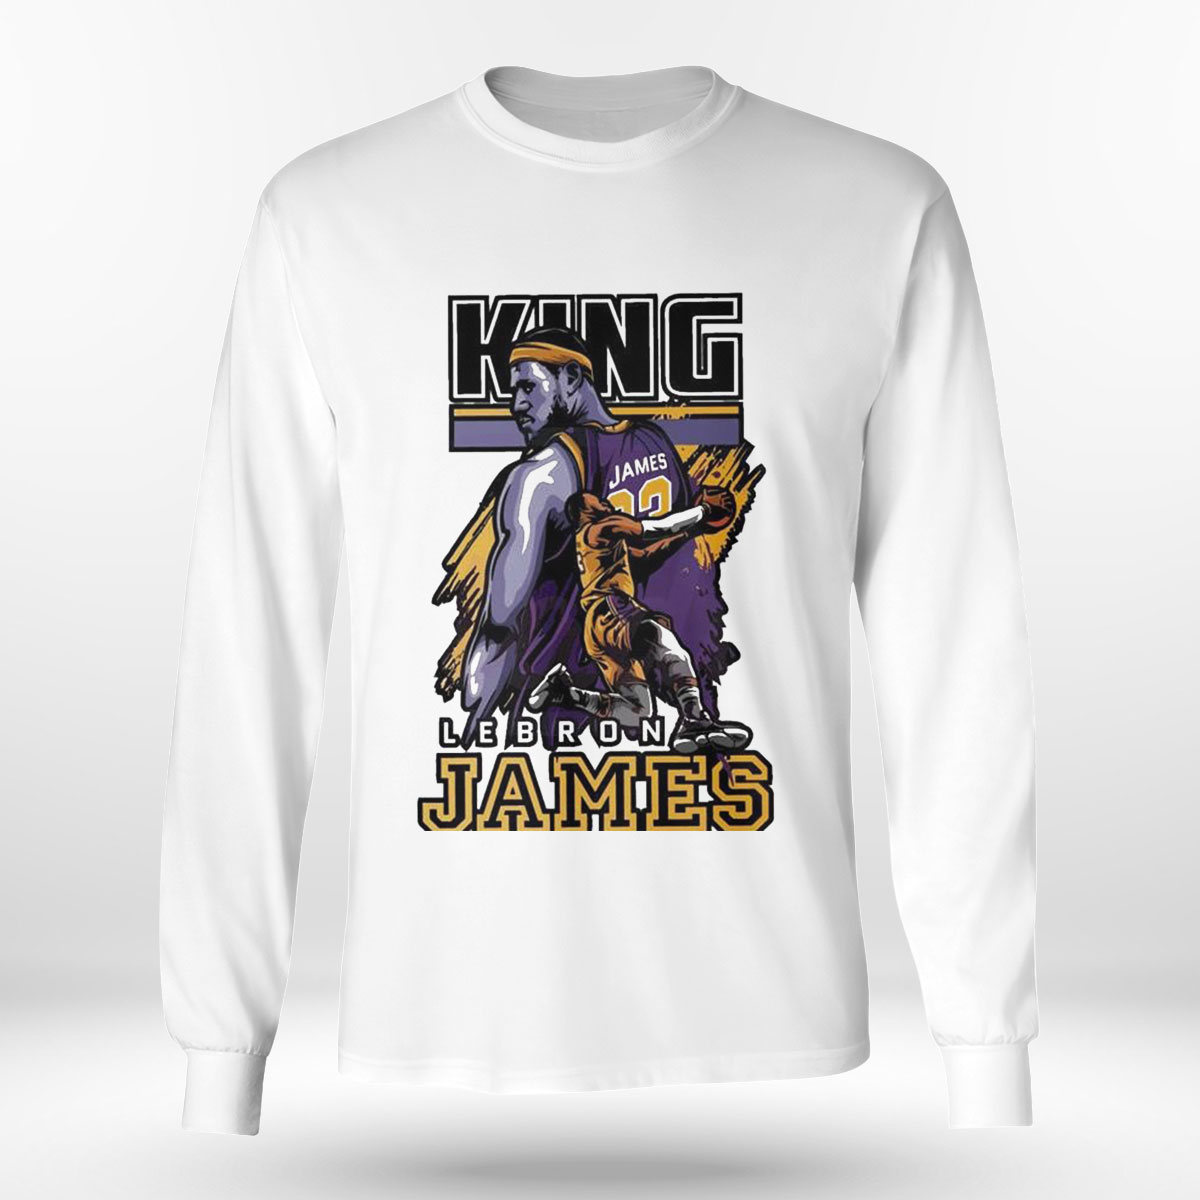 King Lebron James Shirt Ladies Tee